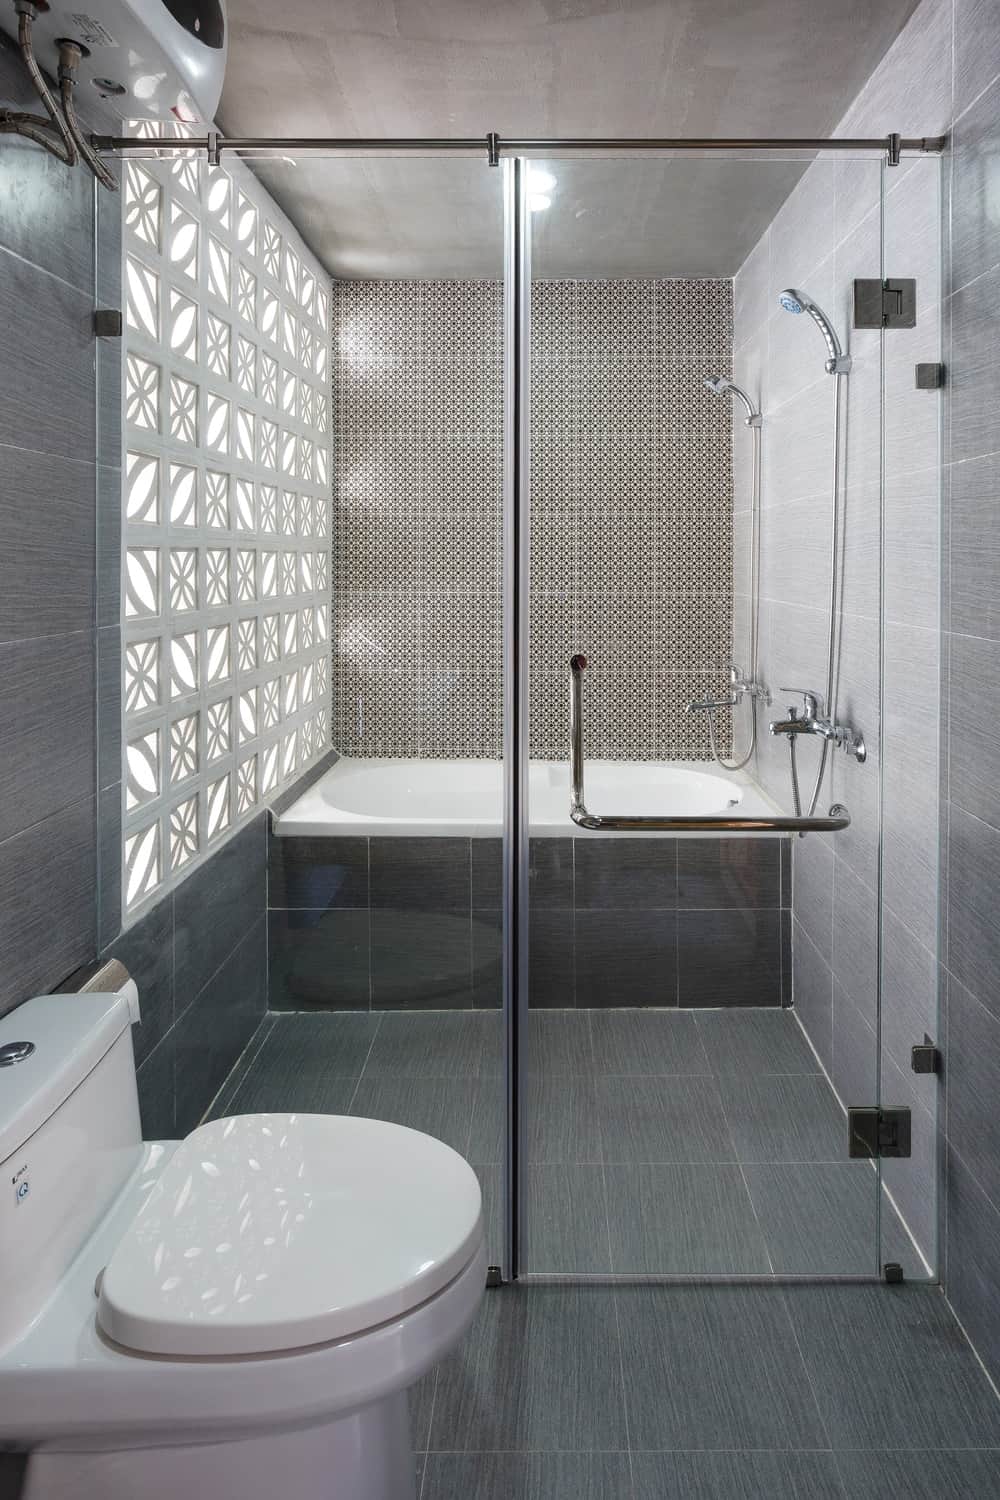 厕所的一侧是通往浴室湿侧的玻璃入口，浴室的远端有淋浴区和浴缸。